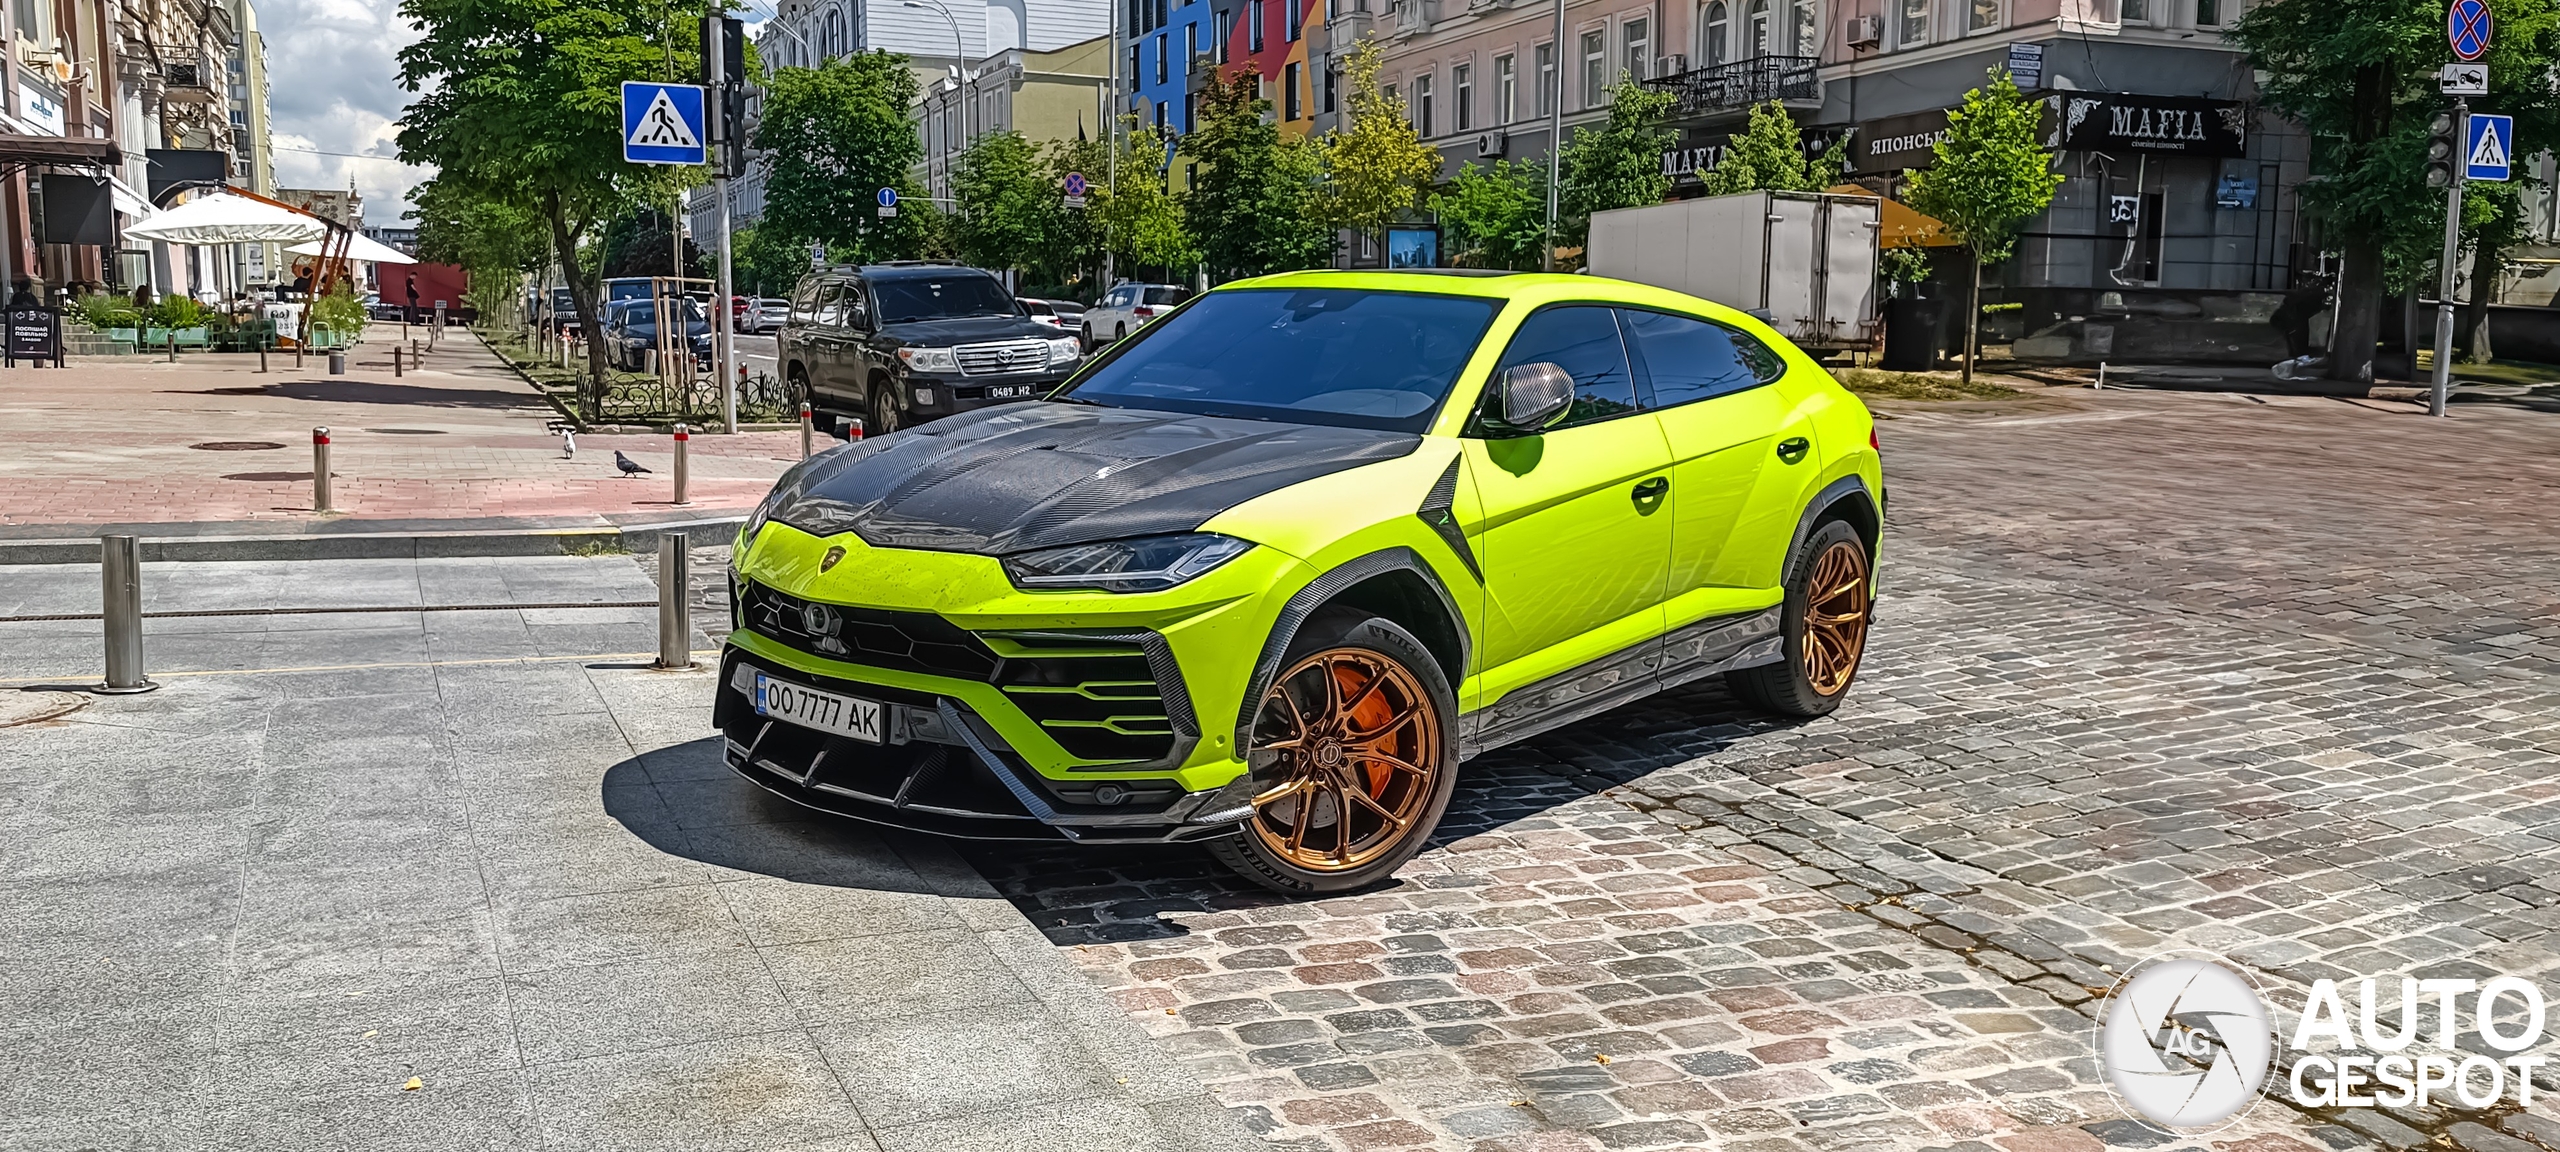 Lamborghini Urus Topcar Design